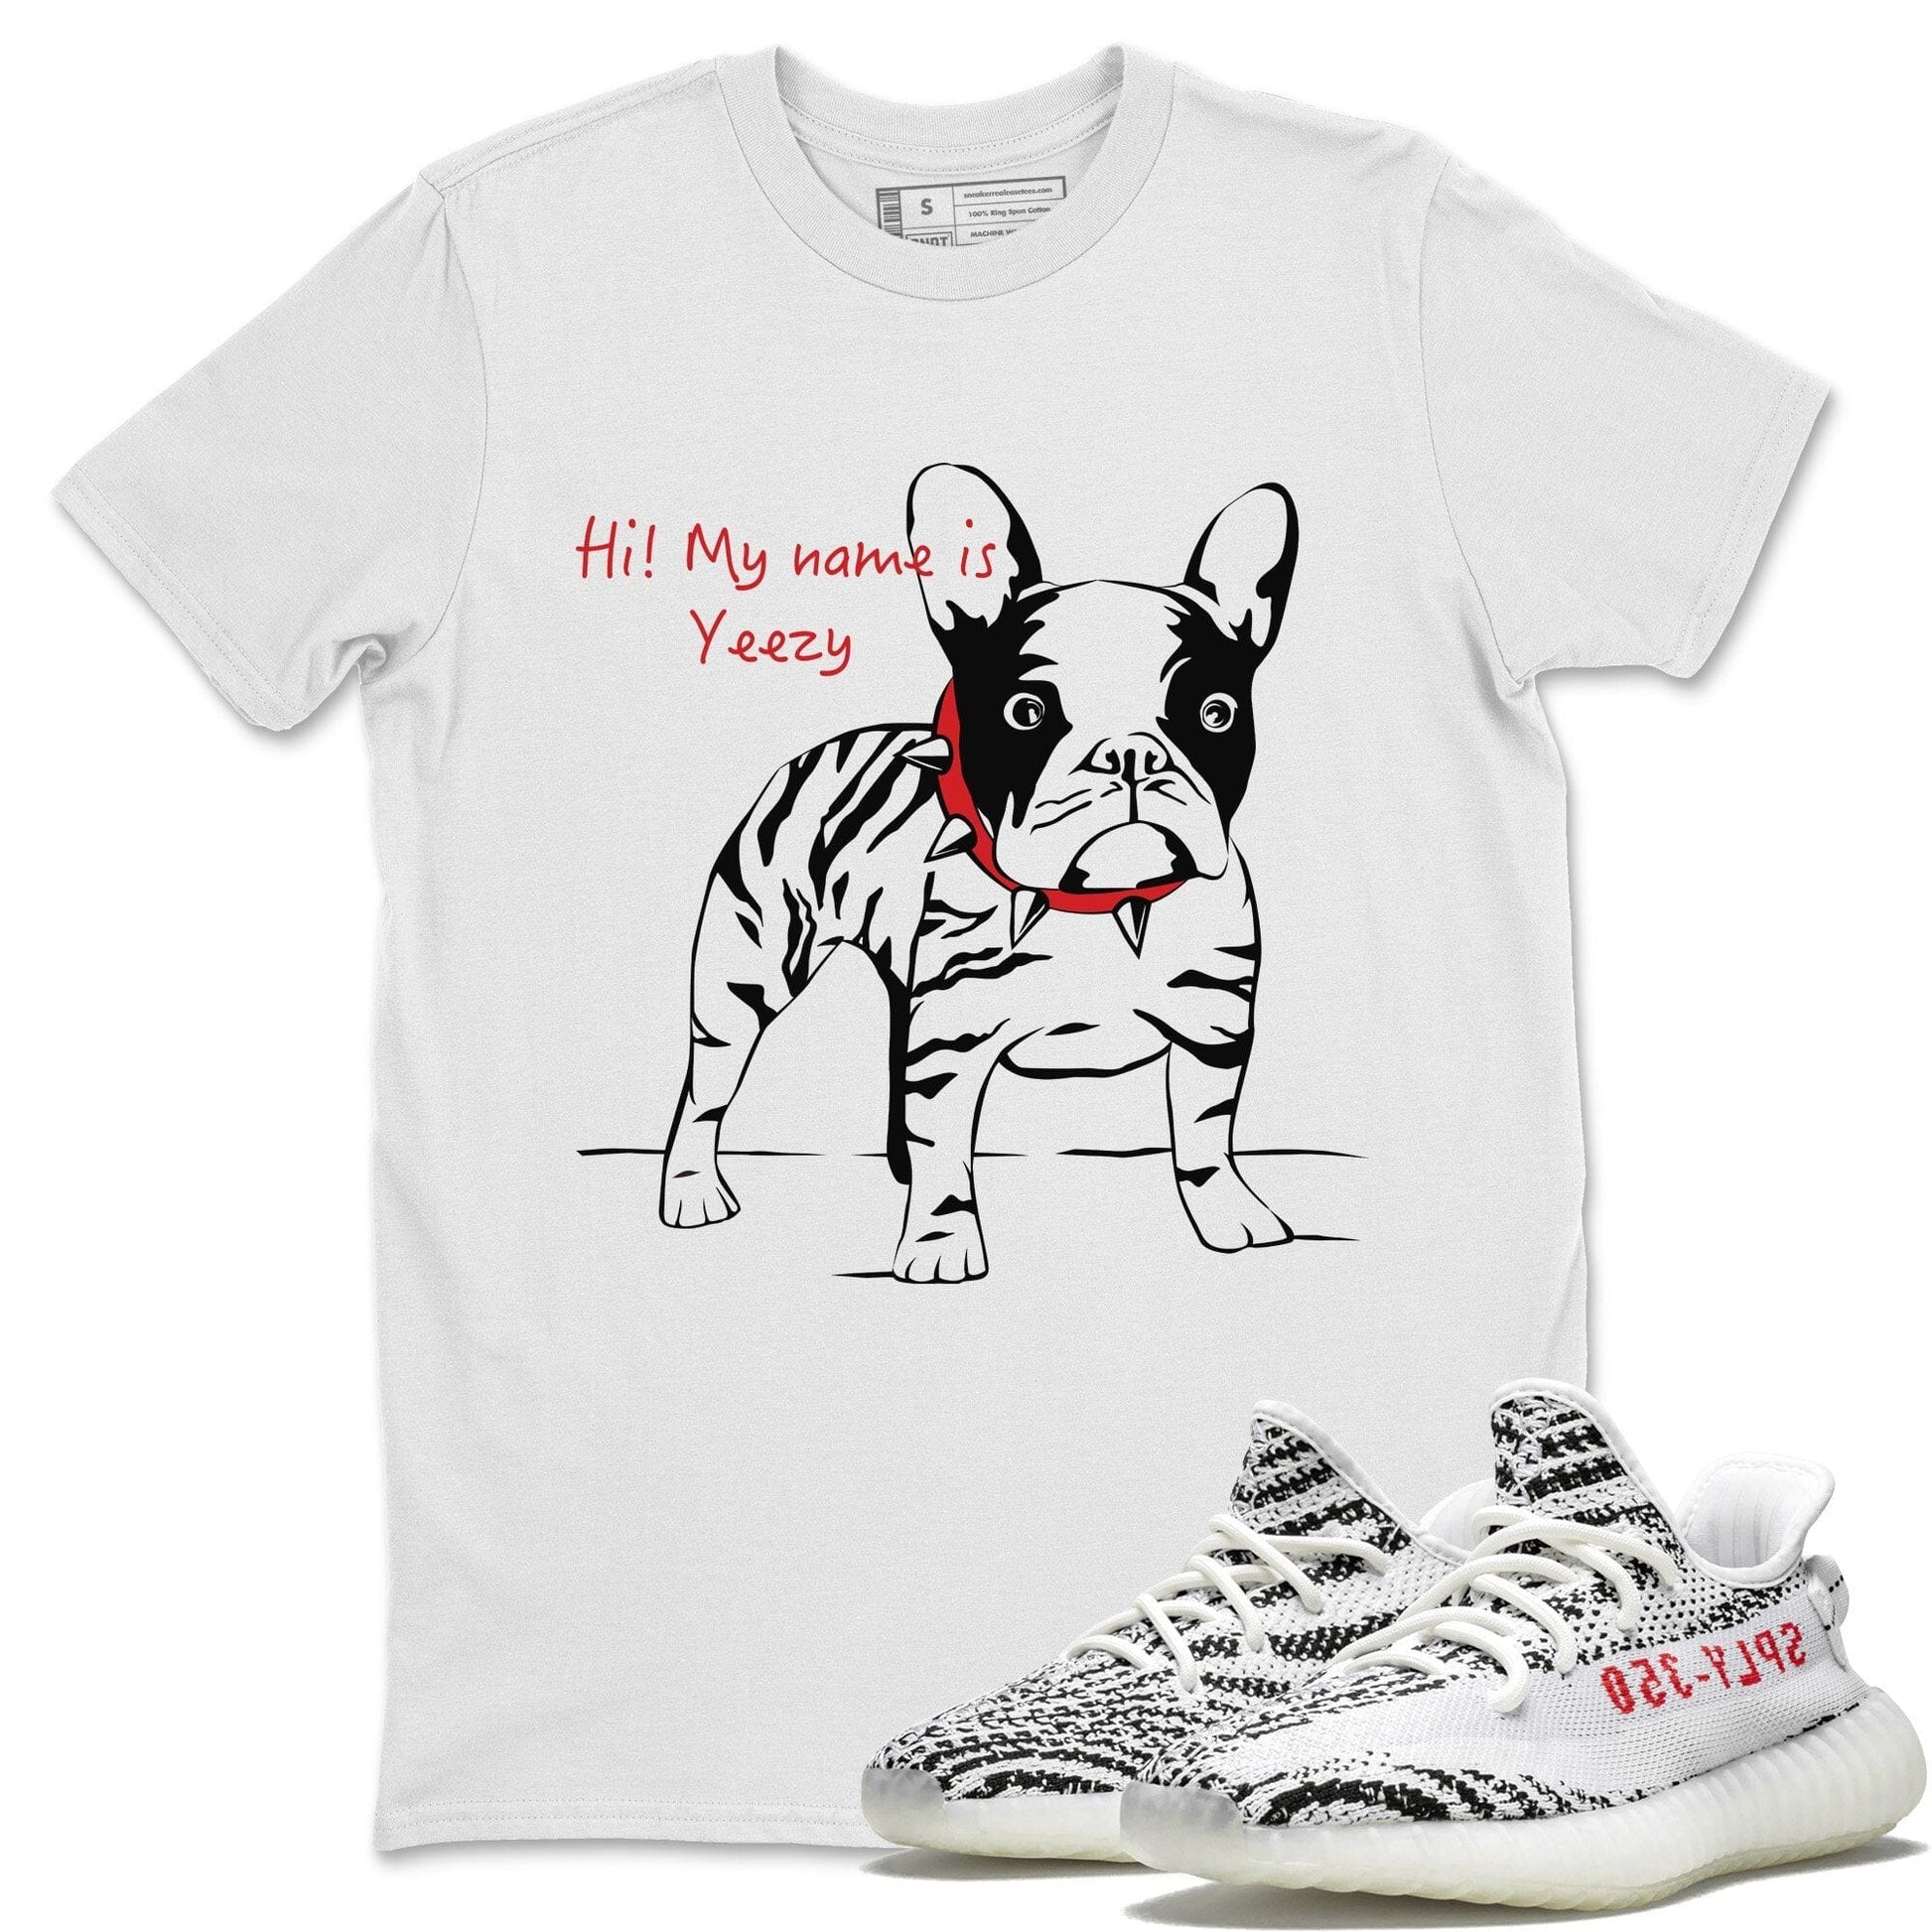 Yeezy 350 V2 Zebra Sneaker Match Tees Zebra Frenchie Sneaker Tees Yeezy 350 V2 Zebra Sneaker Release Tees Unisex Shirts